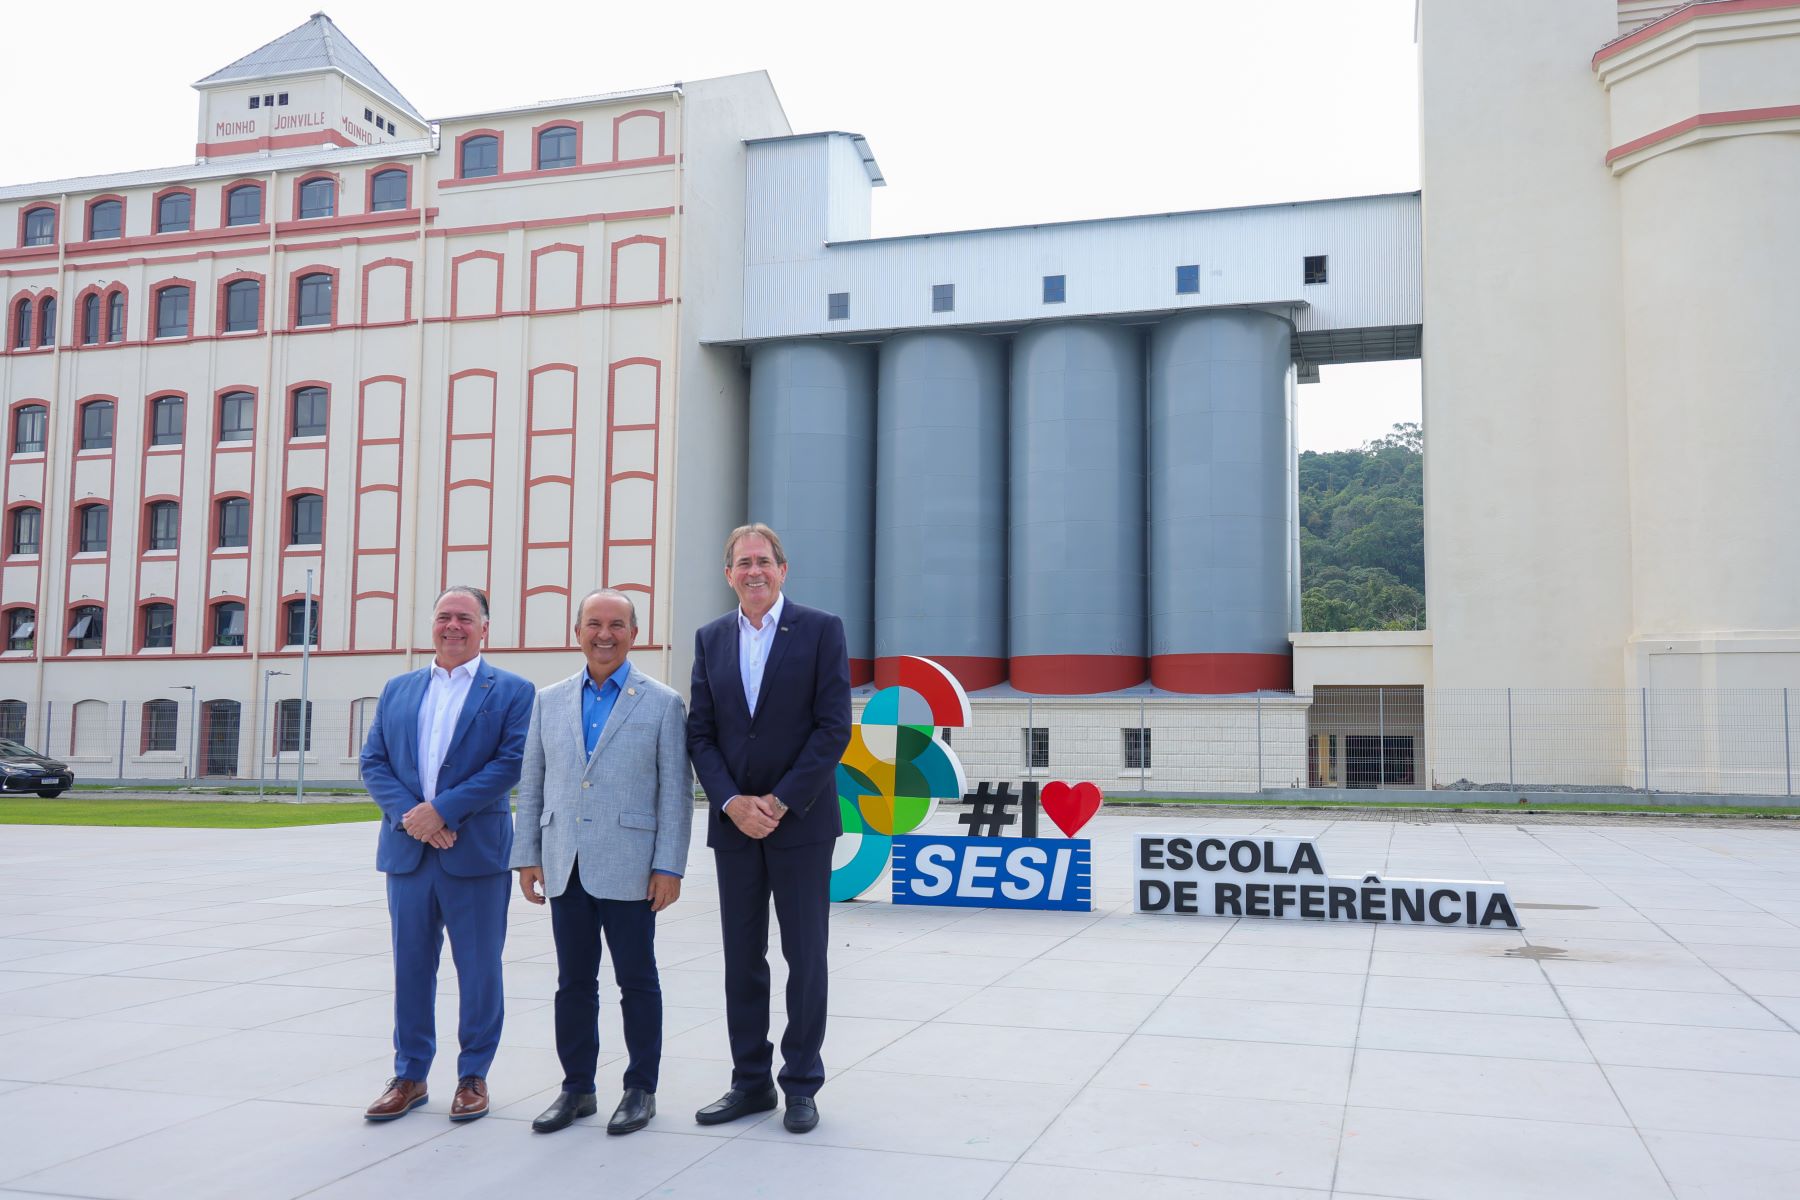 Escola SESI de Referência do Brasil foi inaugurada em Joinville